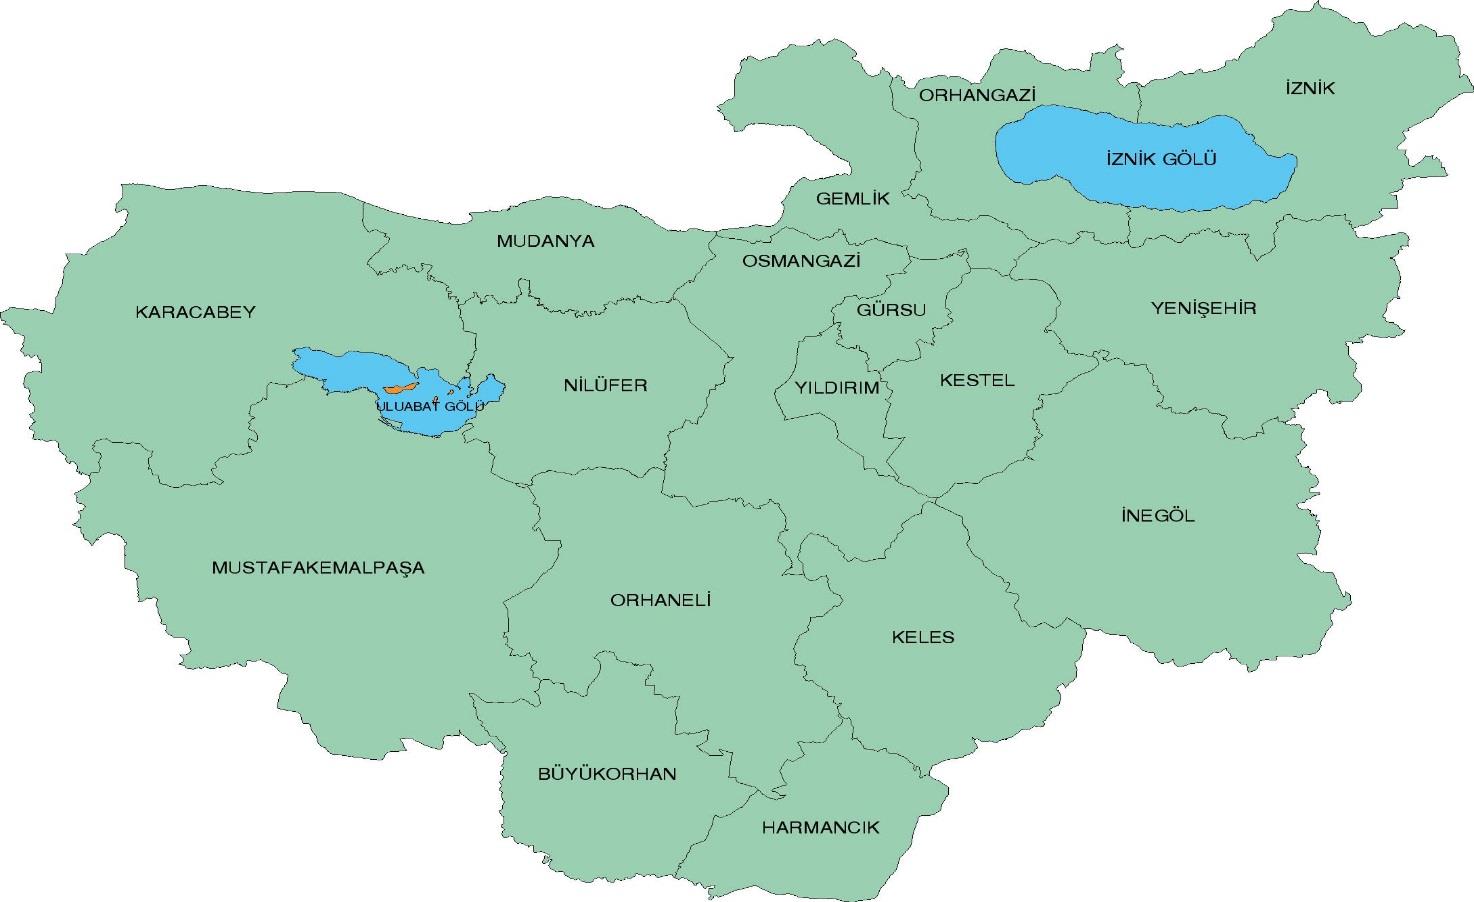 BÖLGESEL TANITIM Genel İçerik Bu kısımda, Bursa şehrinin bölgesel özelikleri hakkında genel bilgilere yer verilmiştir.